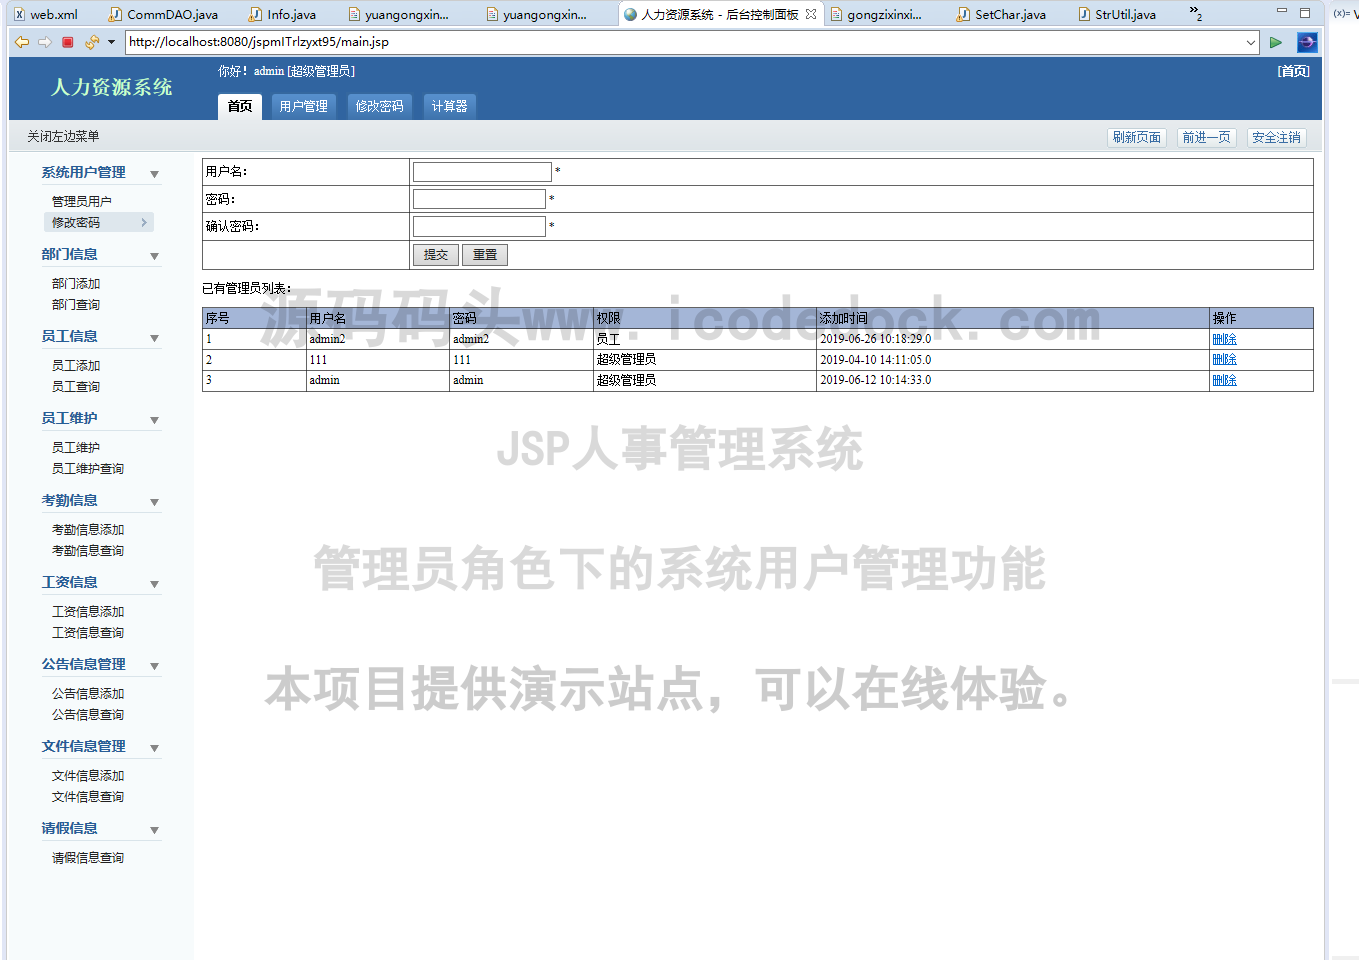 源码码头-JSP人事管理系统-管理员角色-系统用户管理